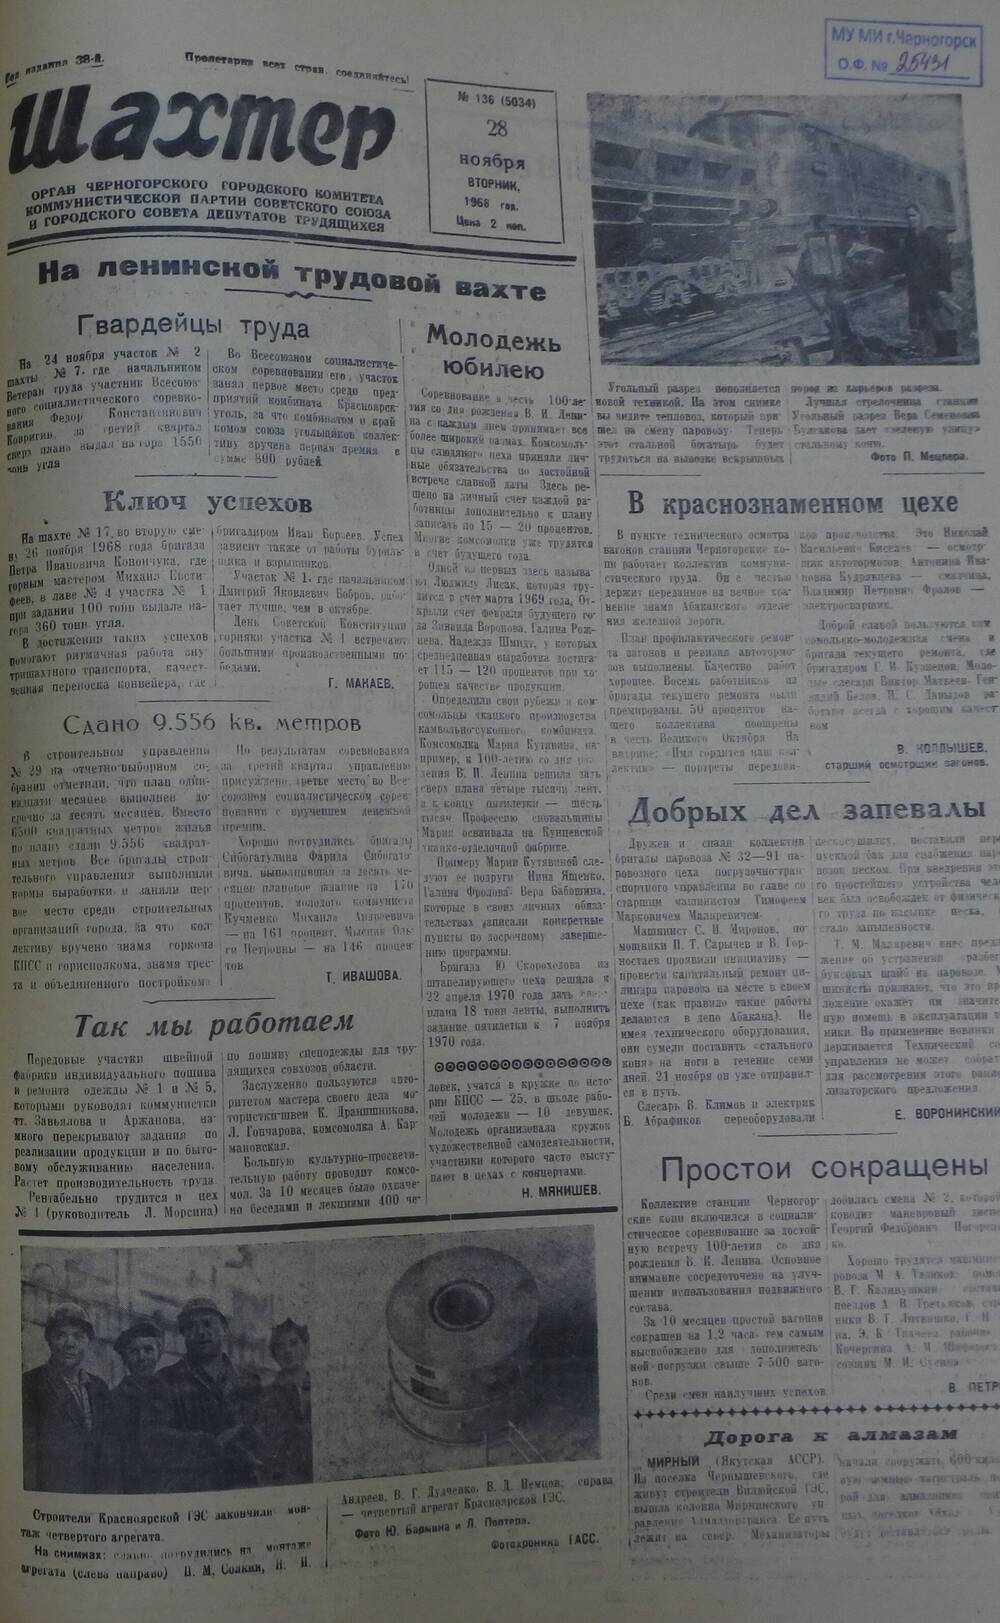 Газета «Шахтер». Выпуск № 136 от 28.11.1968 г.